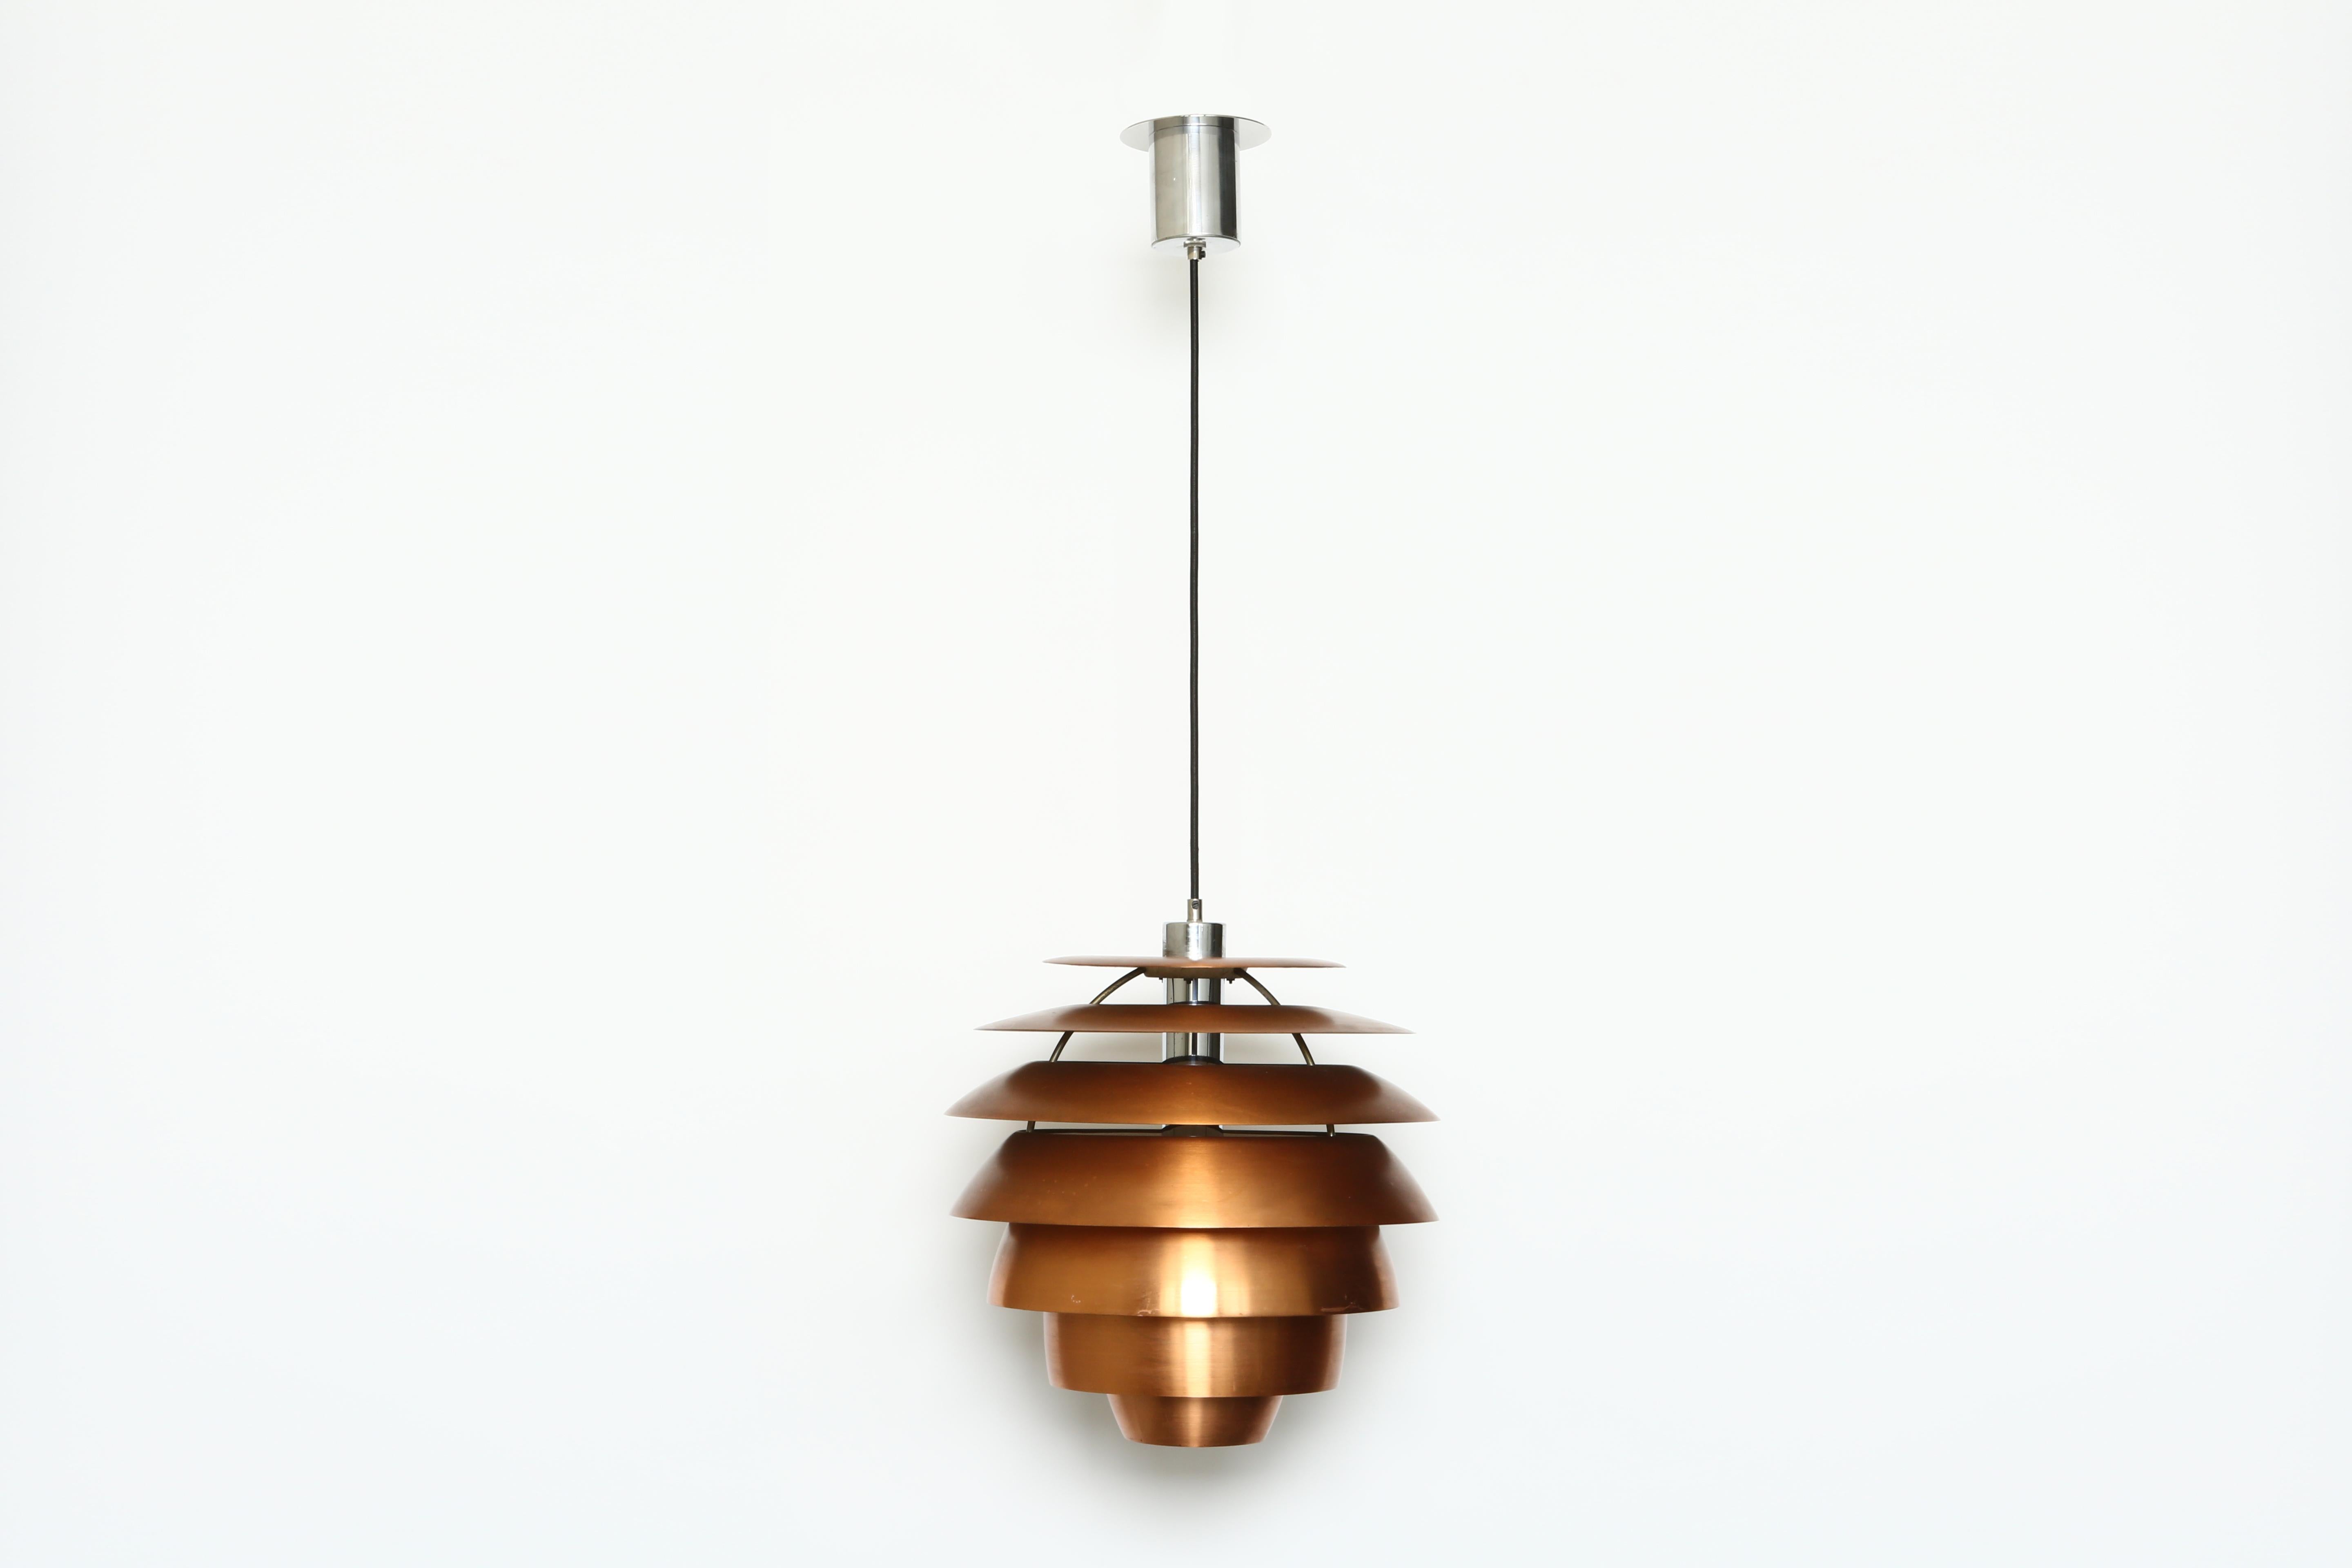 Stilnovo ceiling pendant.
Model 1231. Stilnovo label.
Brushed copper, chrome plated metal.